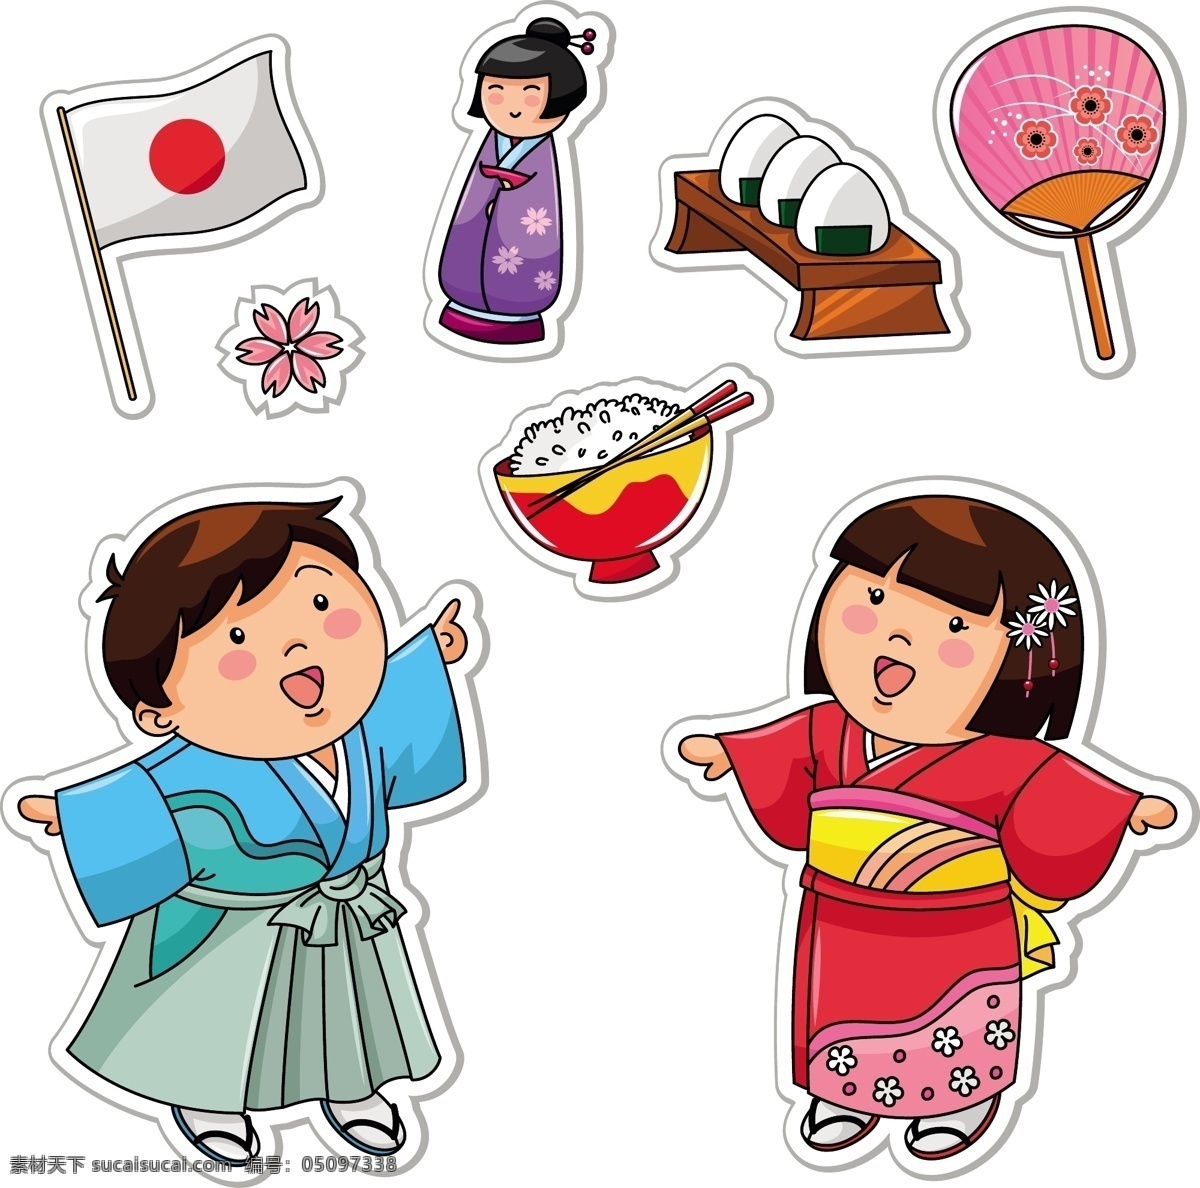 日本卡通儿童 日本儿童 和服女孩 卡通男孩 卡通男生 卡通女孩 卡通女生 卡通儿童插画 卡通儿童漫画 儿童幼儿 矢量人物 矢量素材 白色